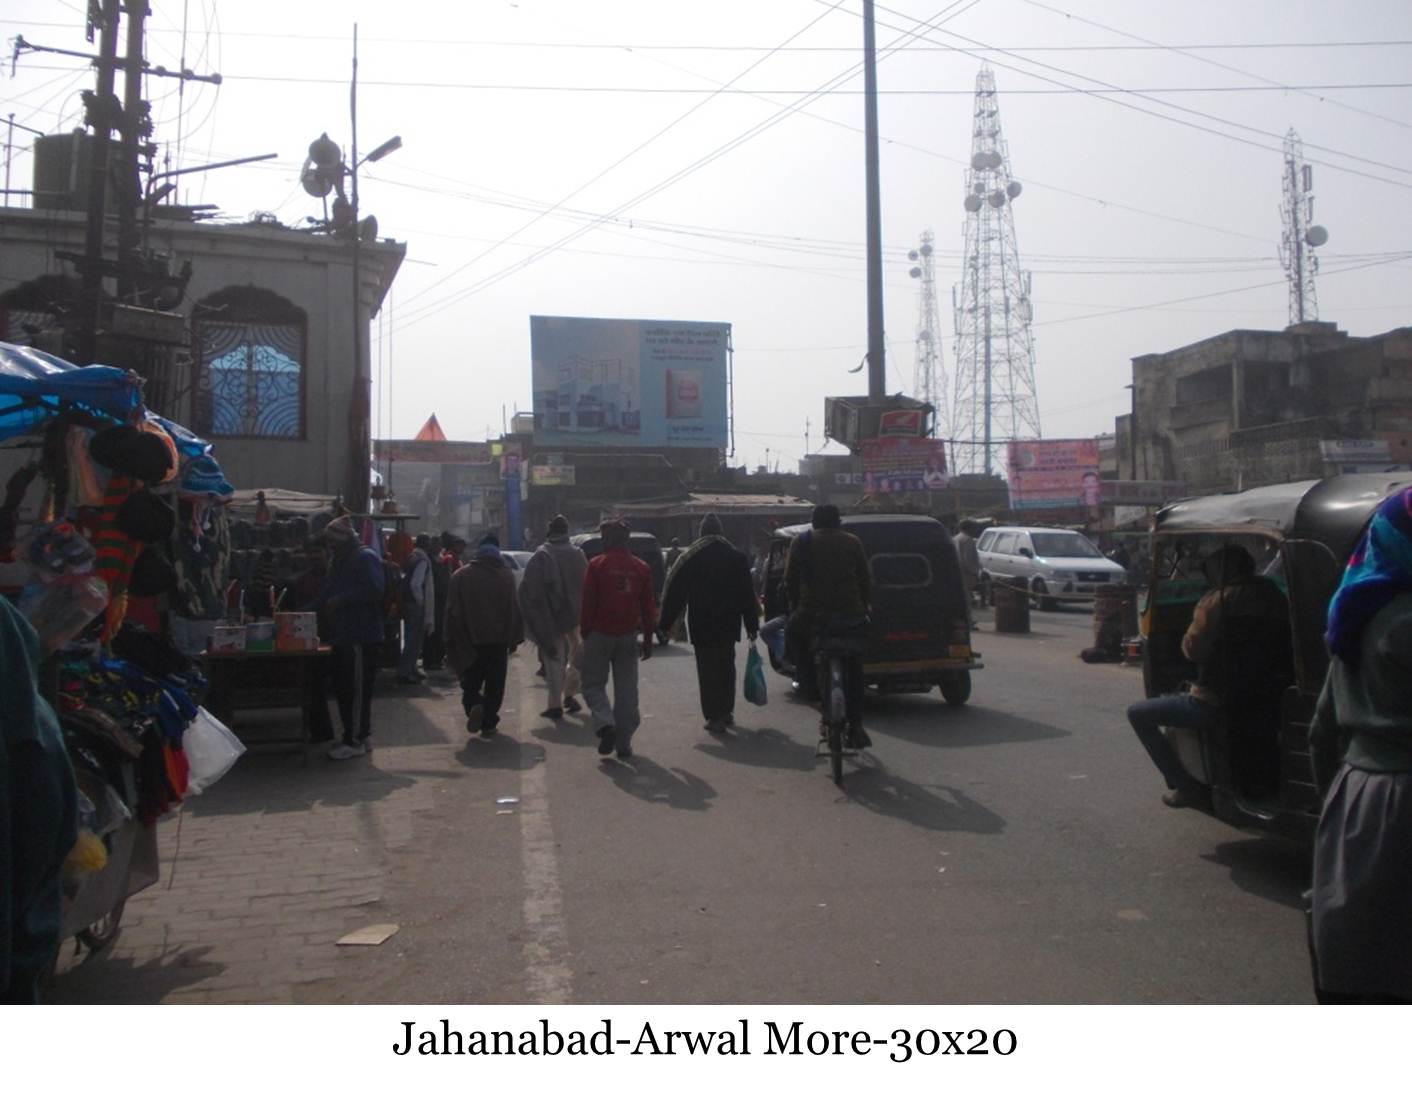 Arwal More, Jahanabad